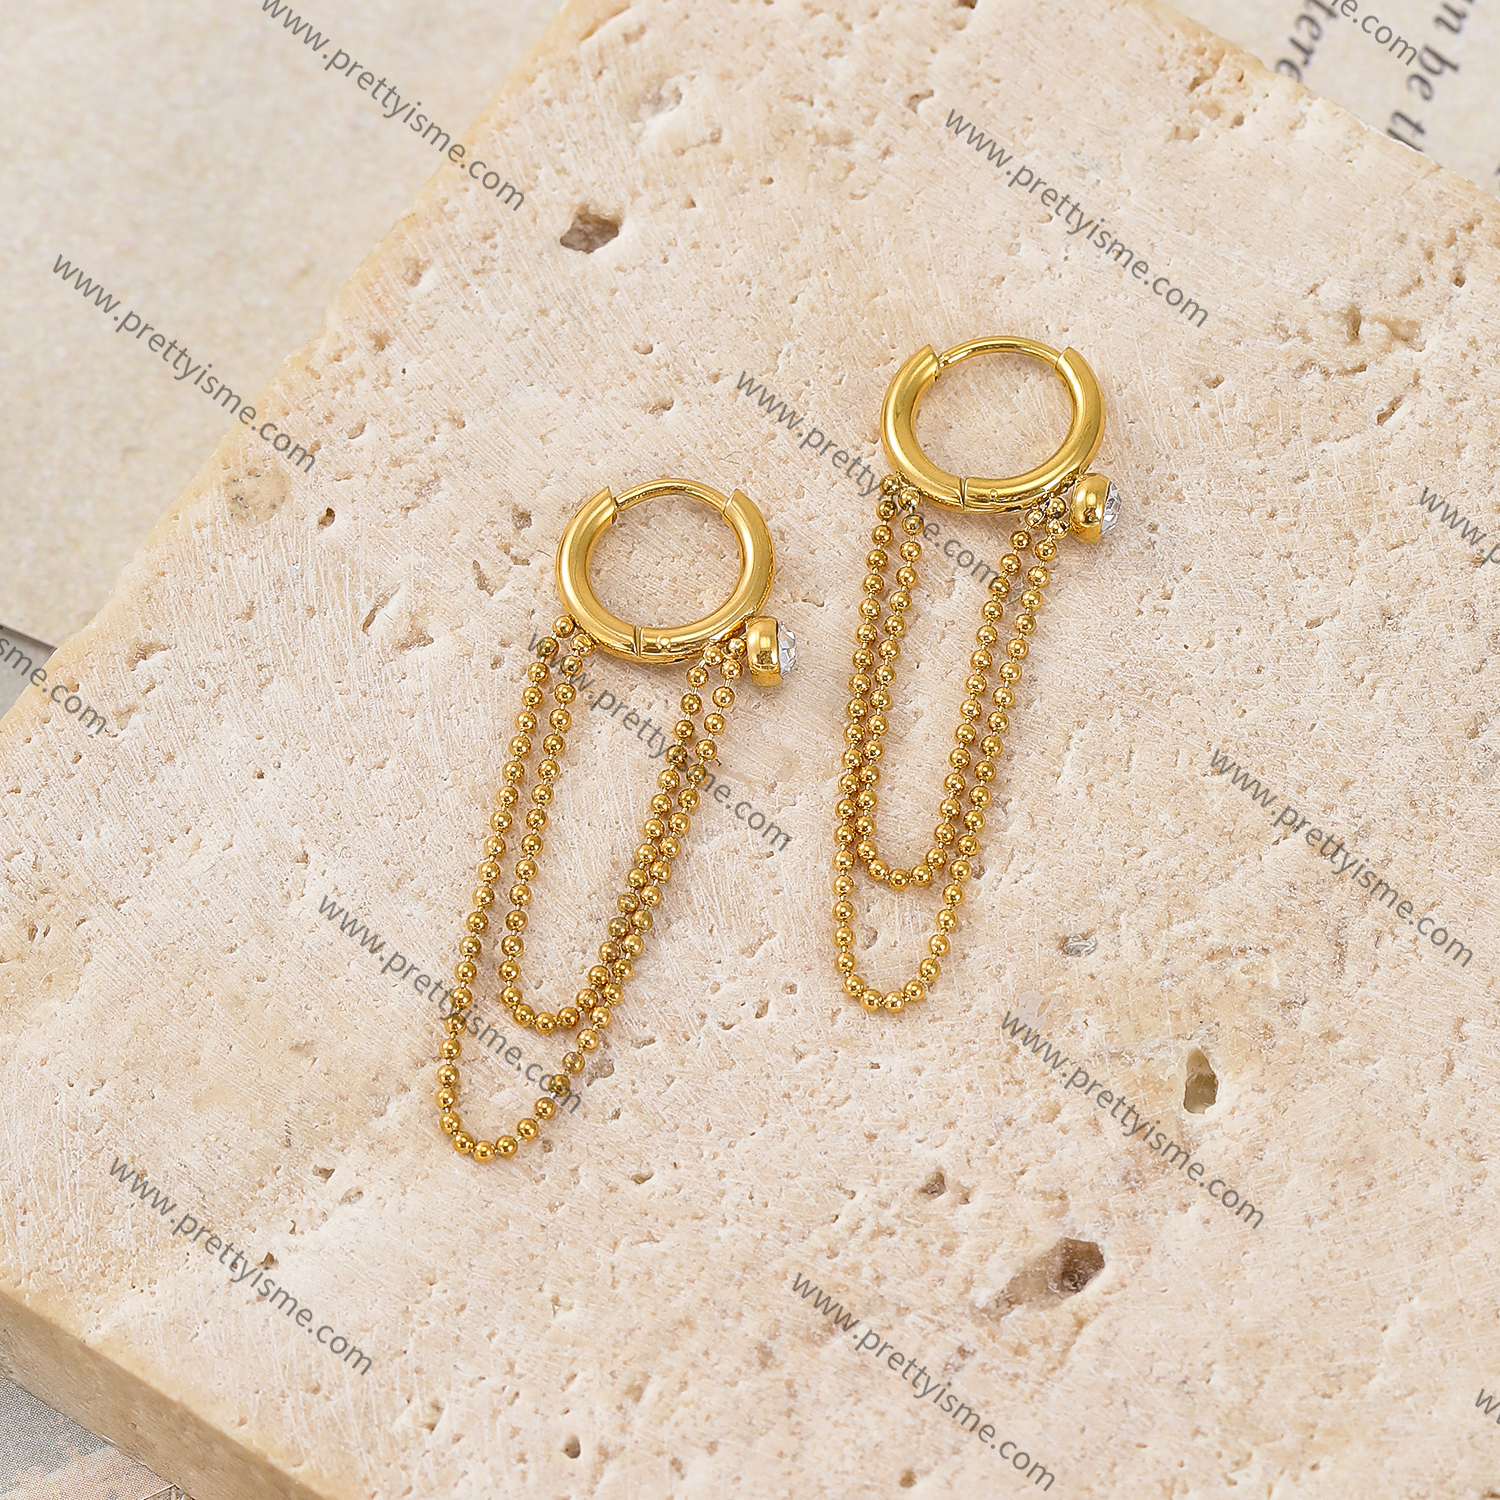 Long Chain Stainless Steel Earrings Gold Plated 18K Diamond Elegant Earrings (3).webp